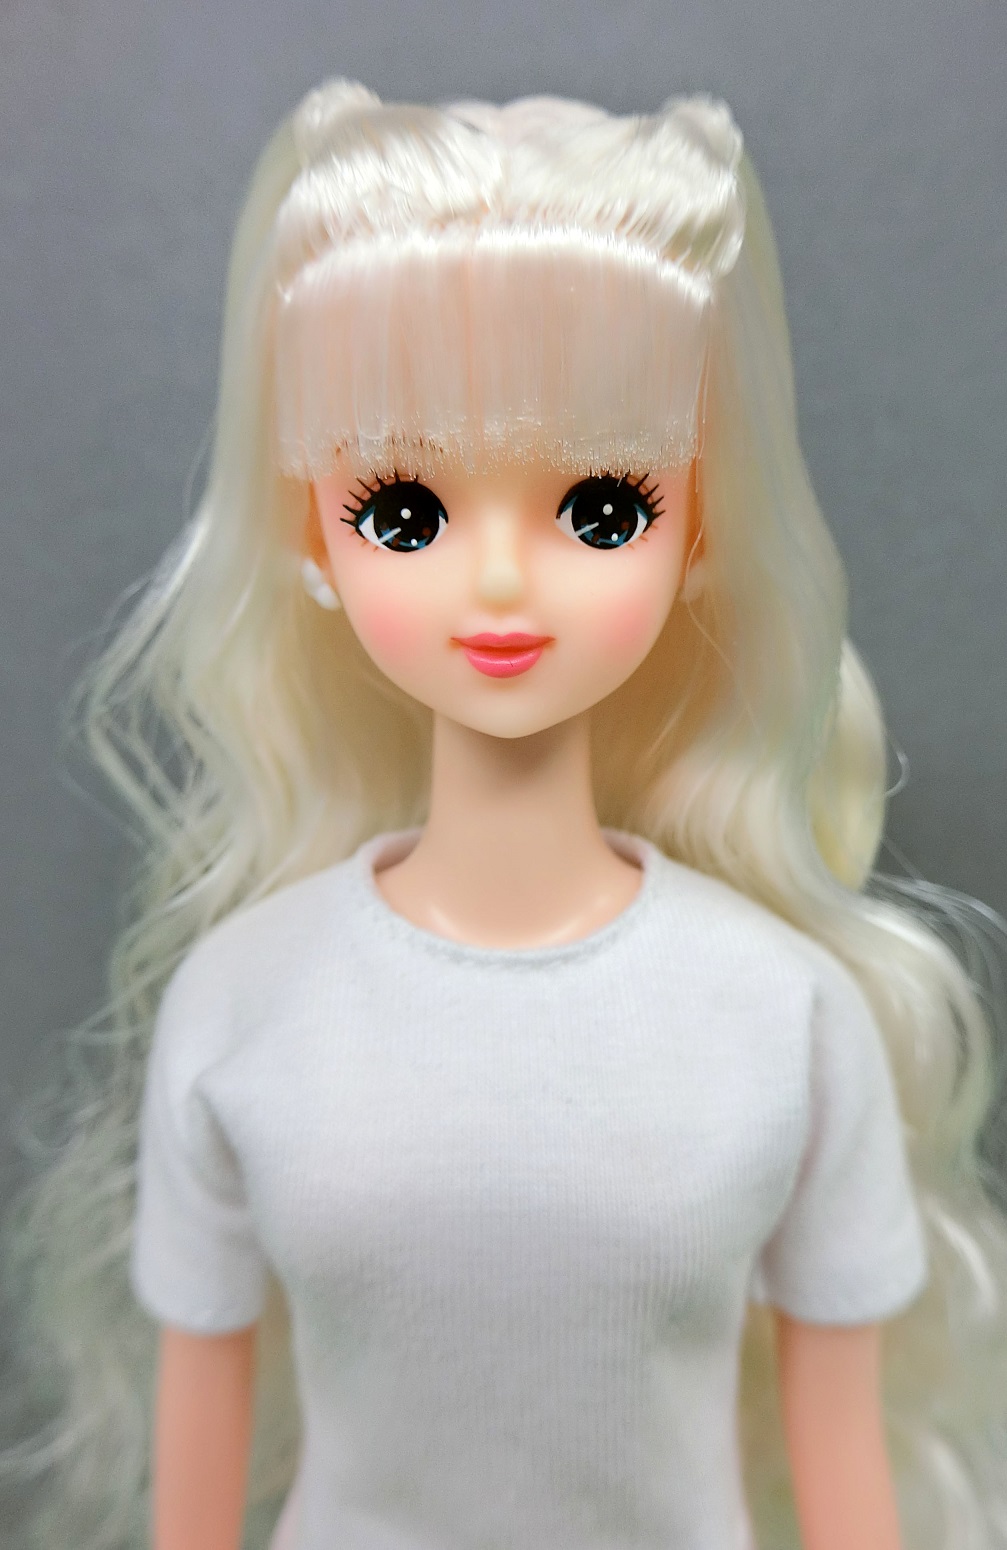 【高知インター店】 レア オリジナルドール プラスチックケース入り ジェニー他 リカちゃんキャッスル おもちゃ/人形